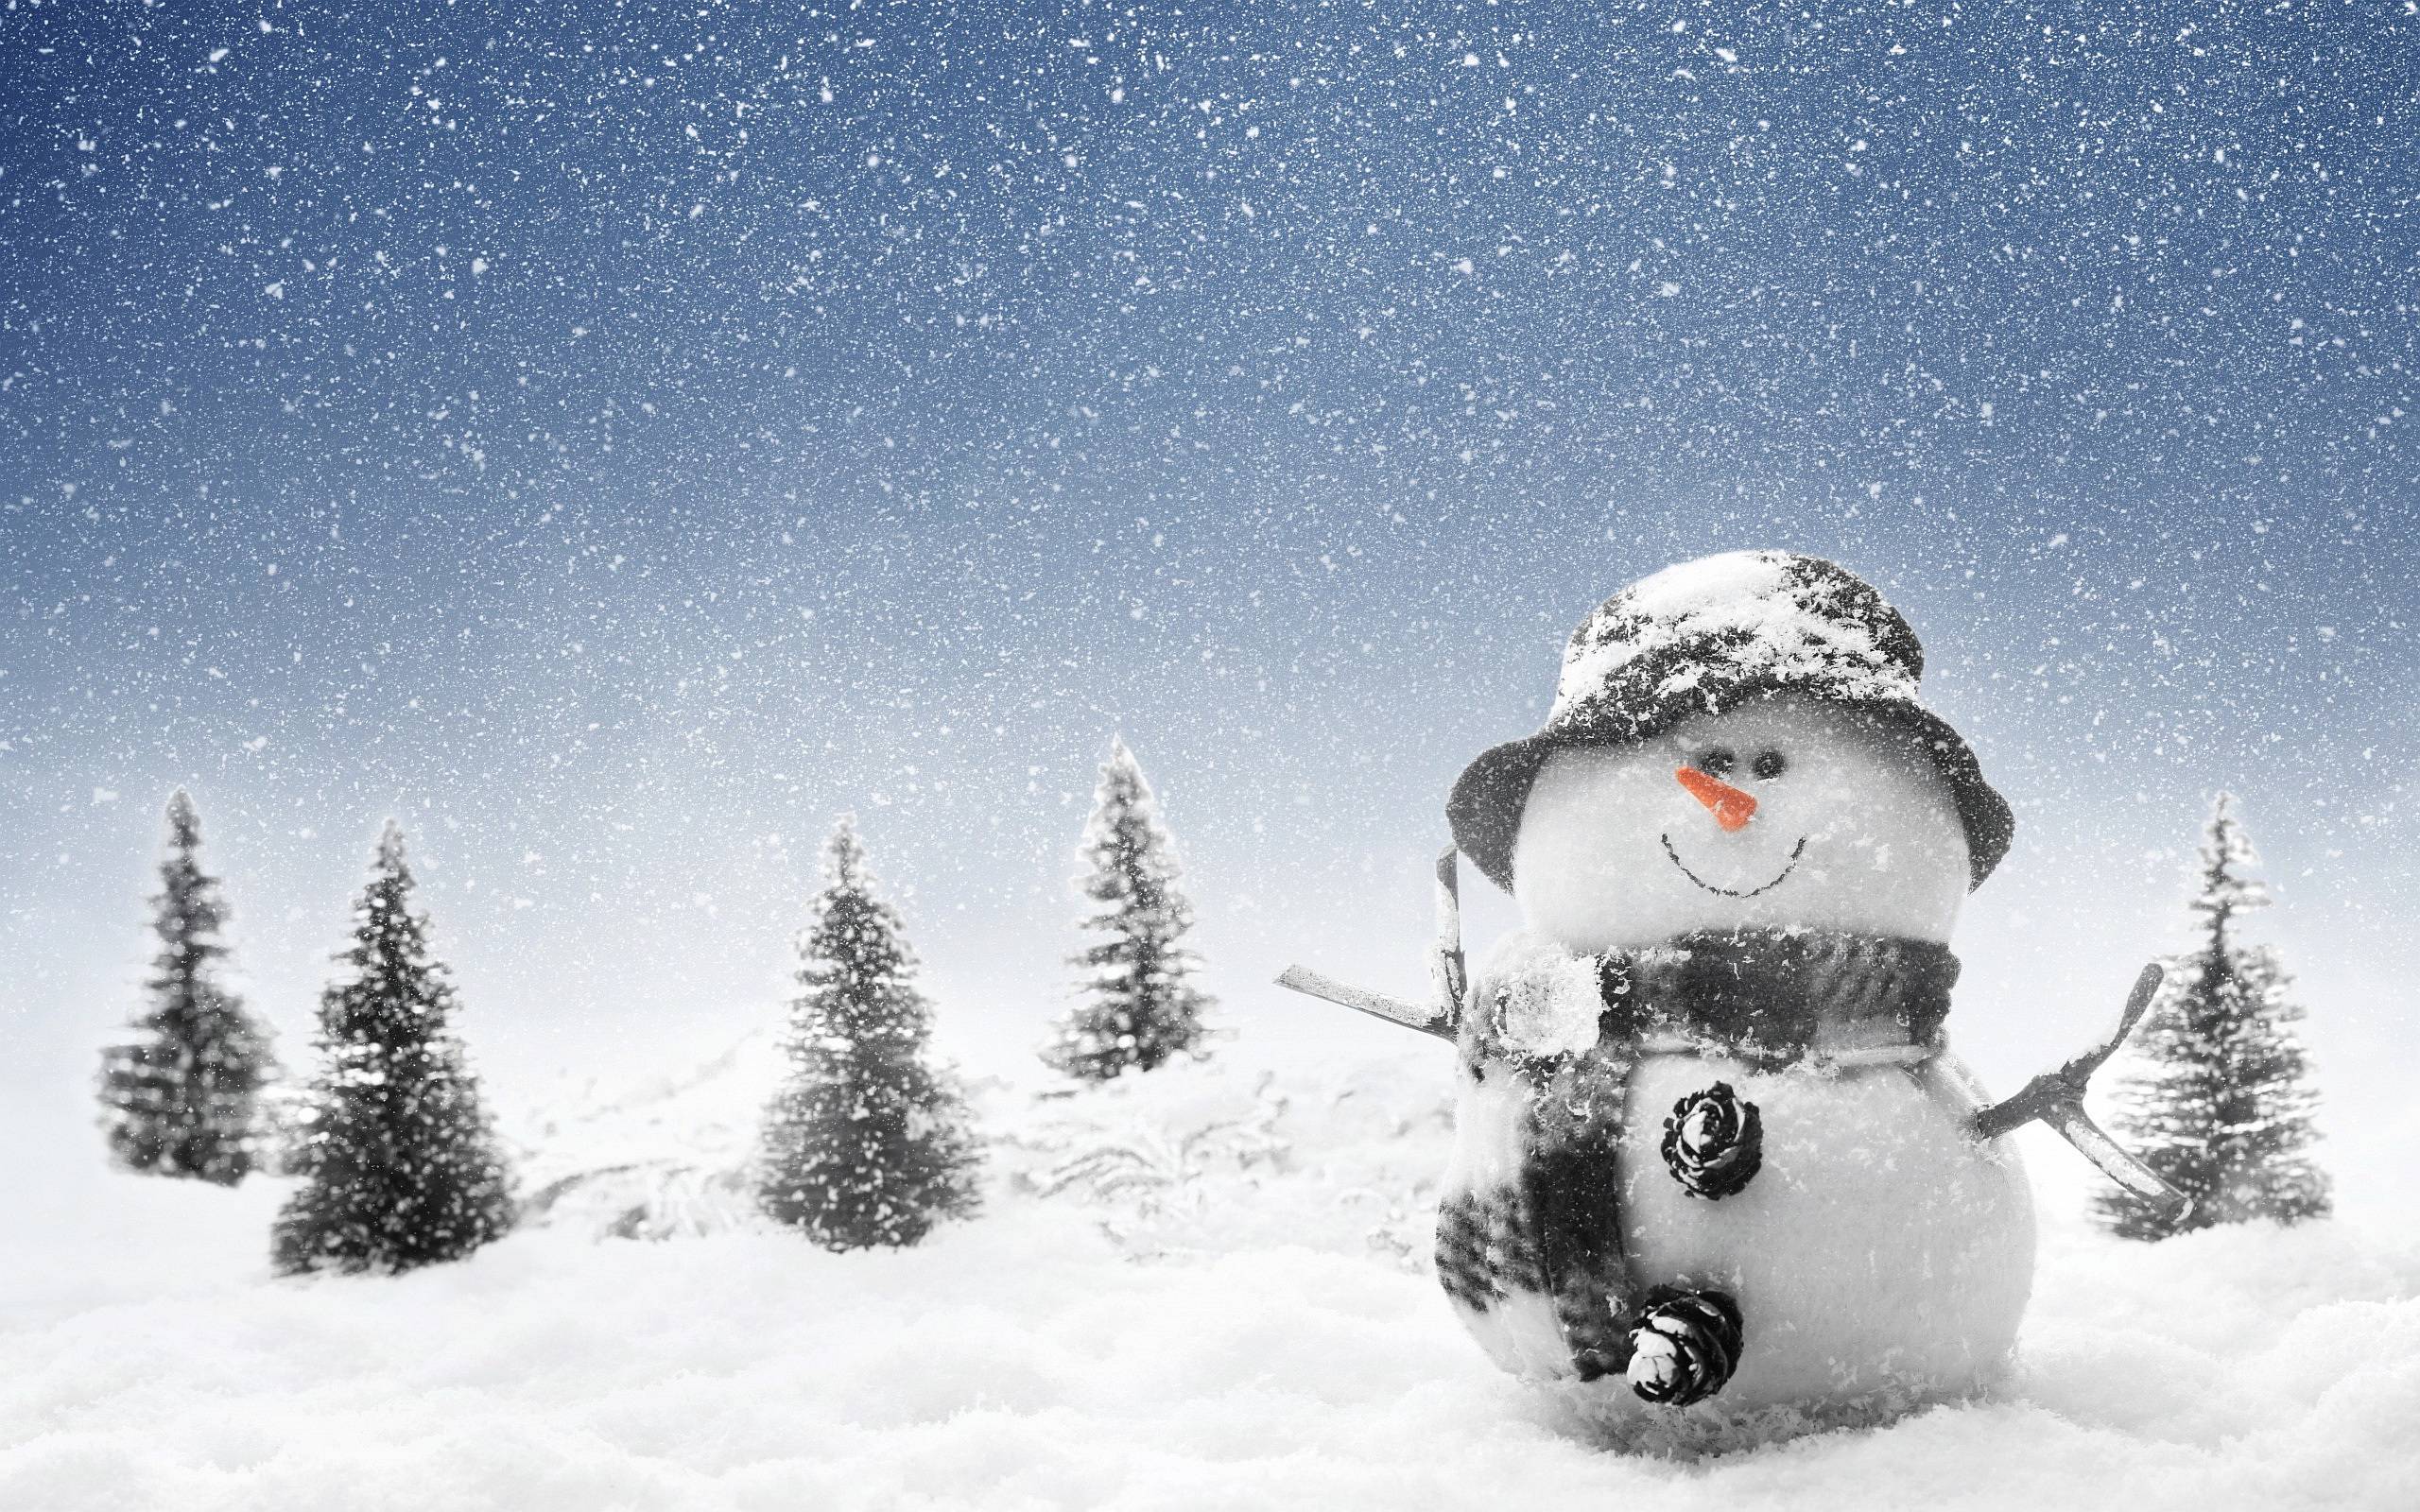 Winter Snowman Wallpaper